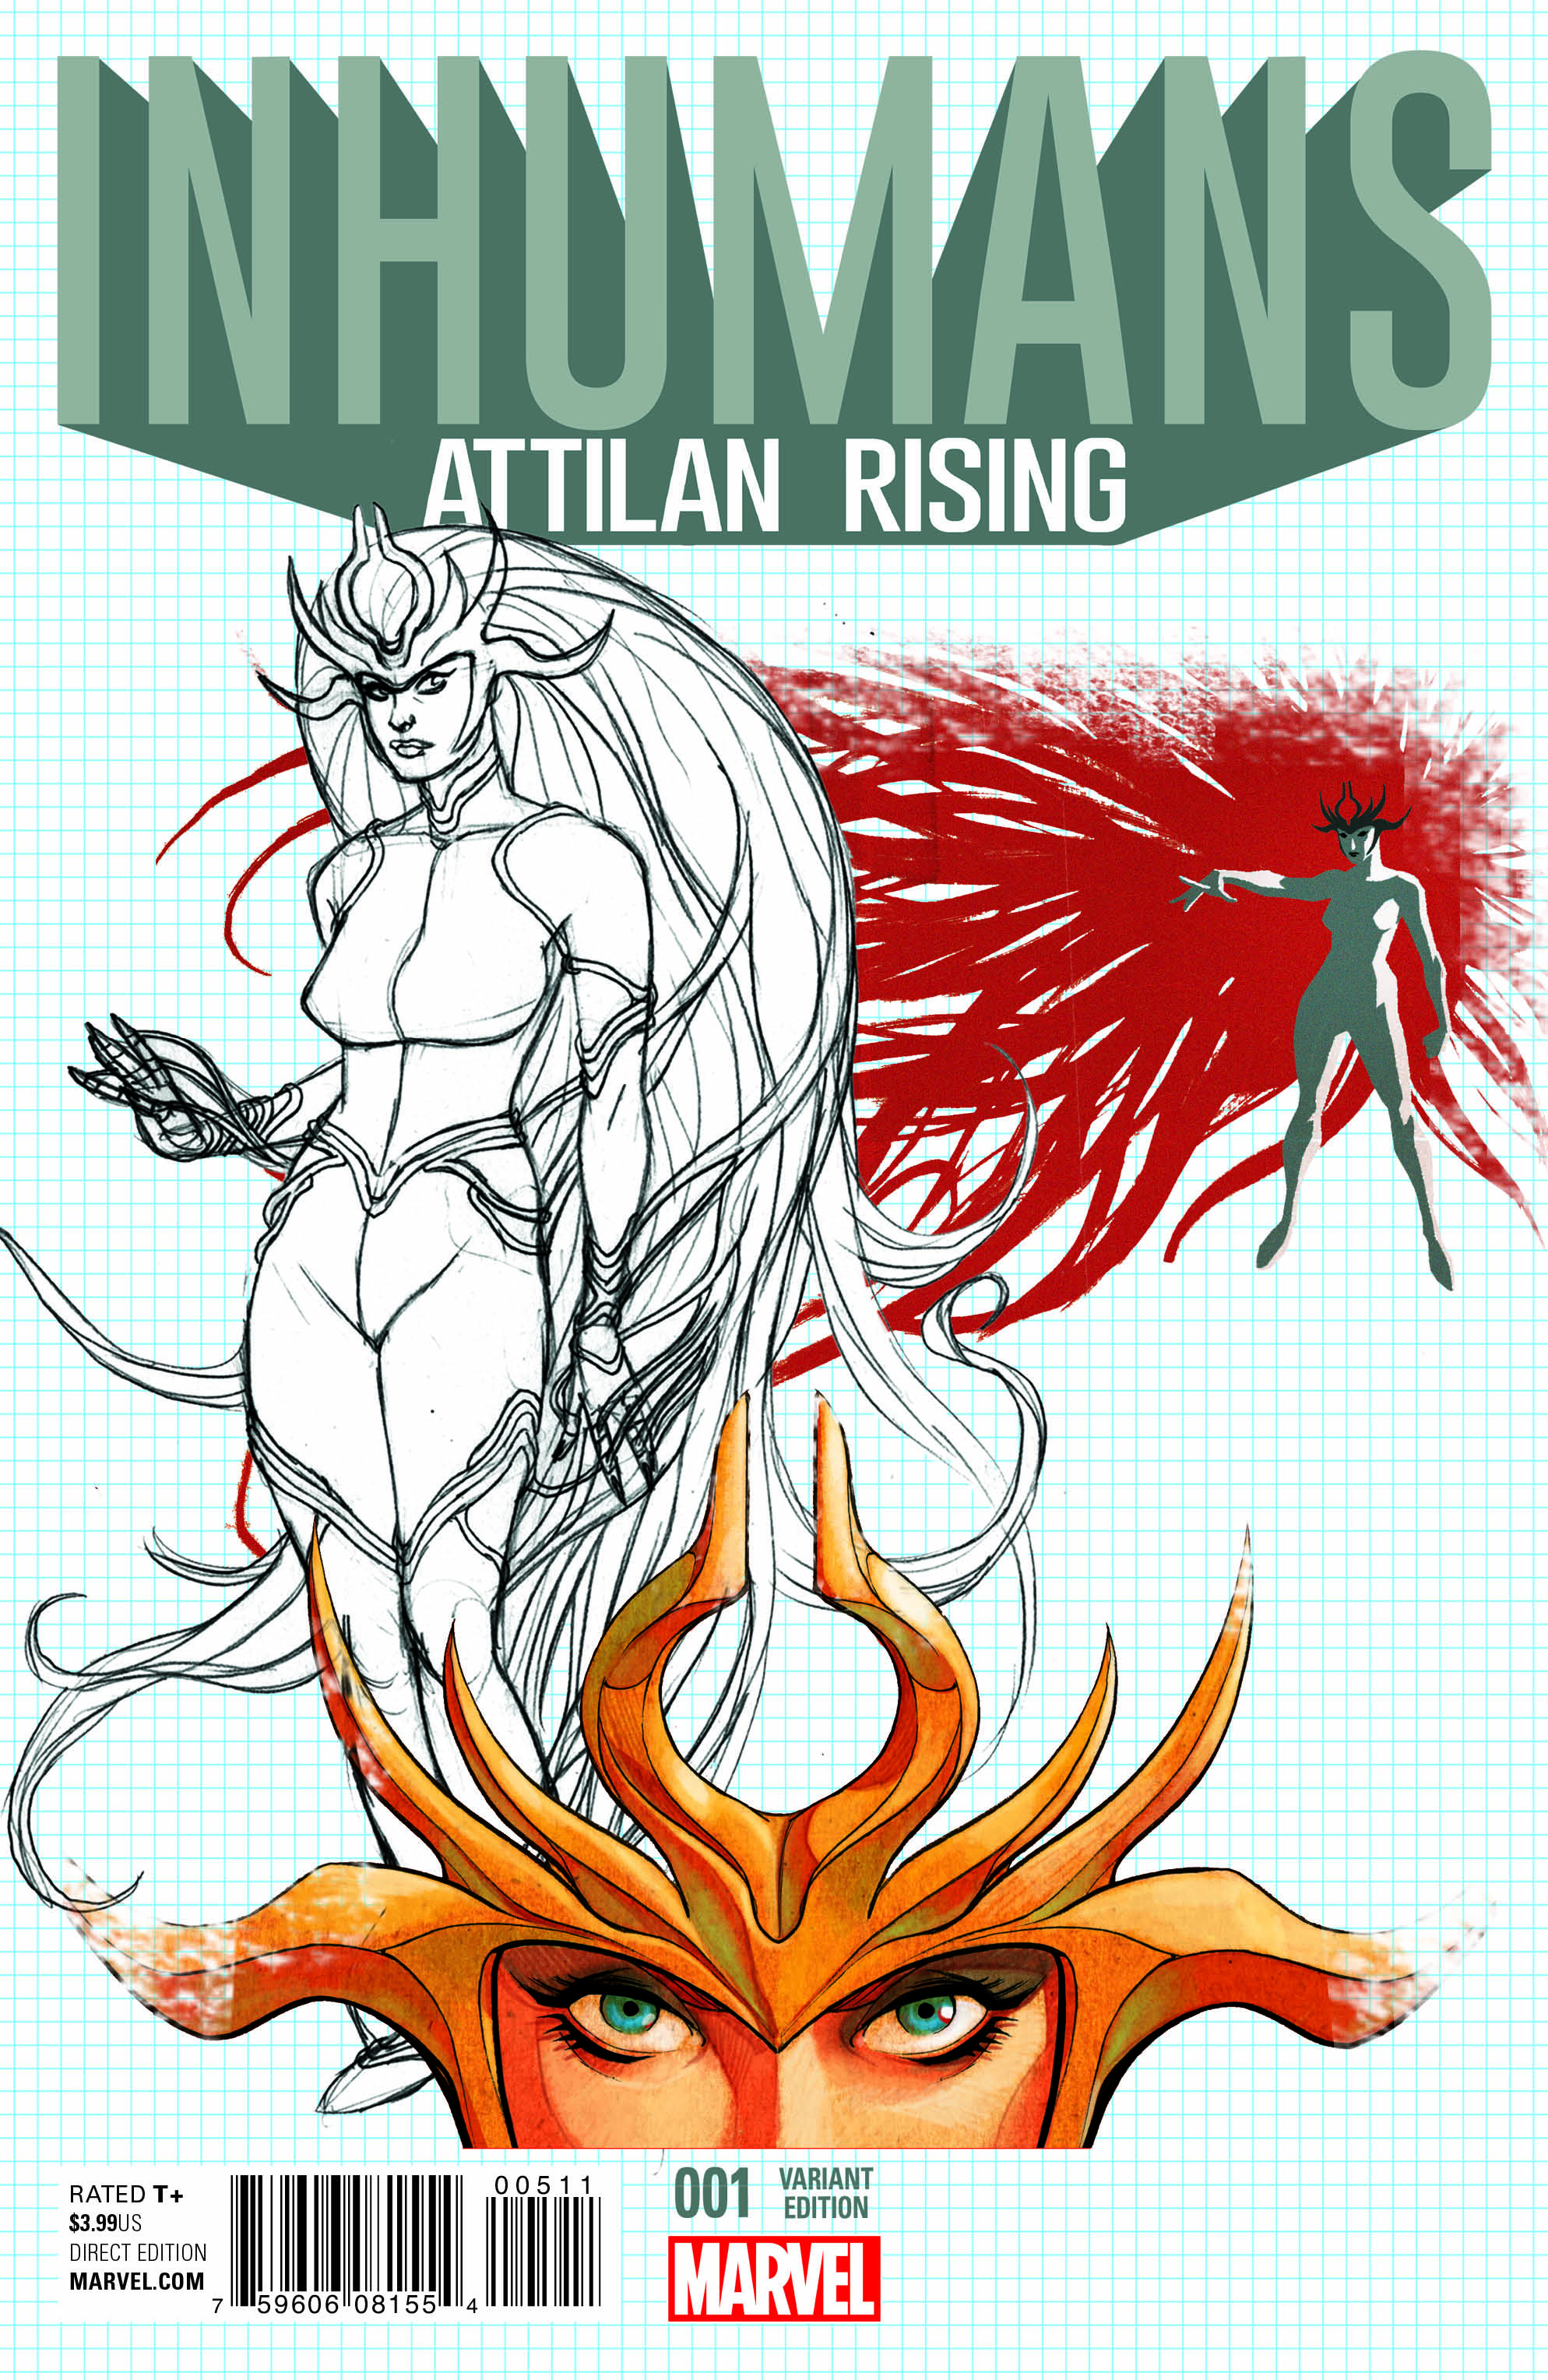 Inhumans_Attilan_Rising_Johnson_Design_Variant